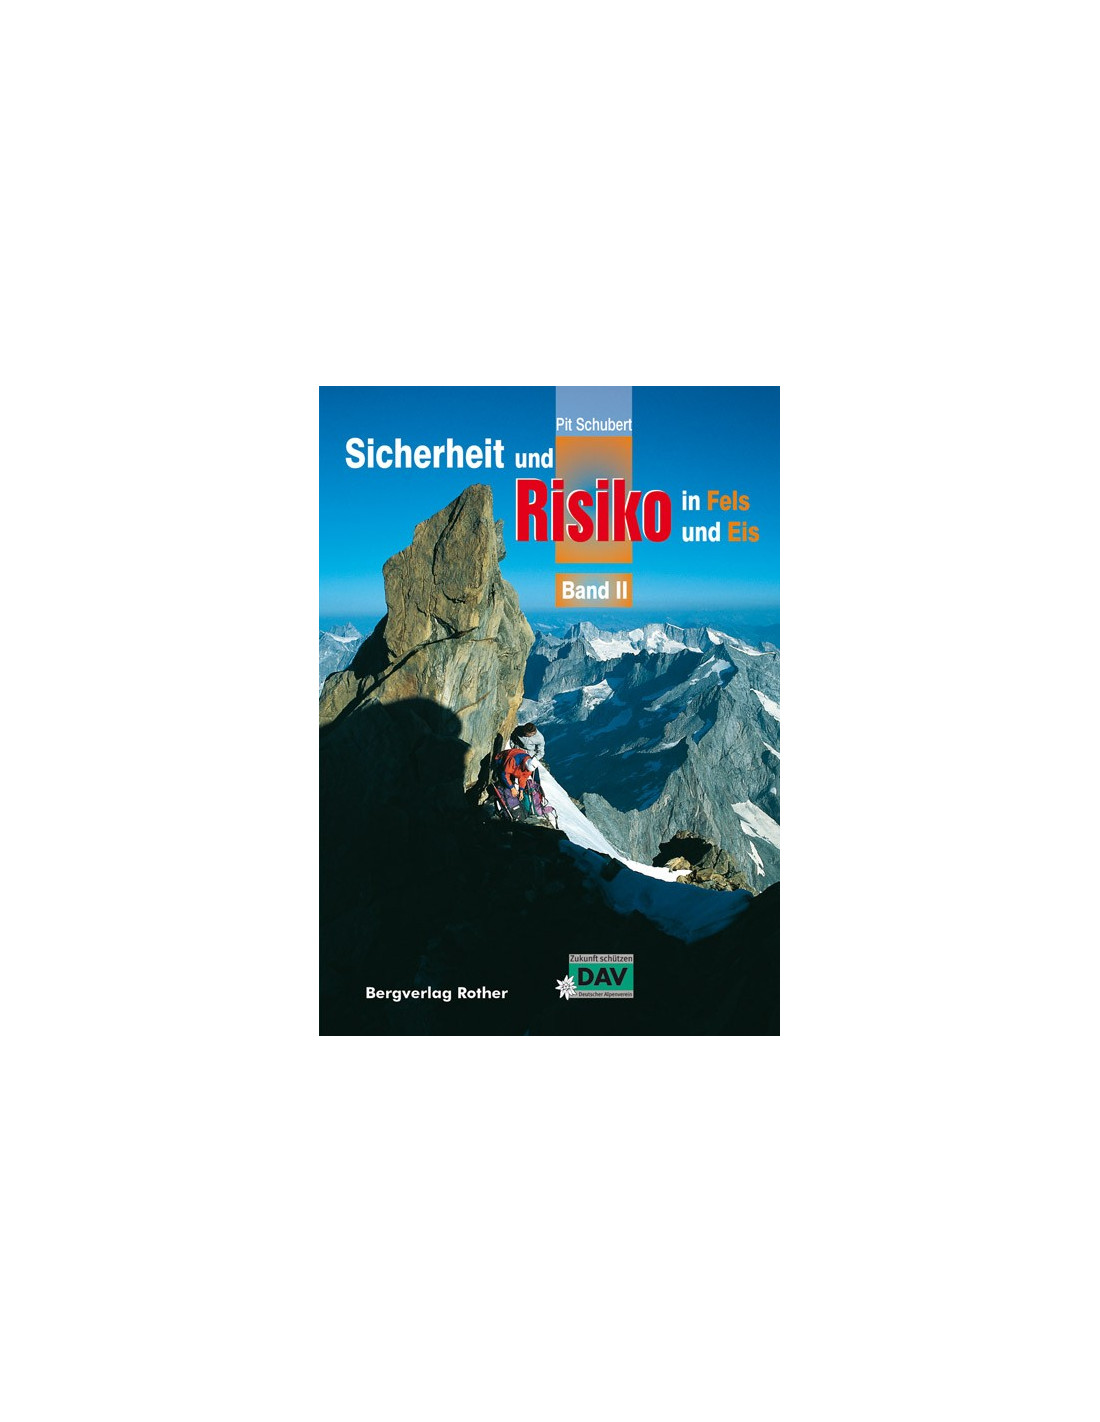 Pit Schubert Sicherheit und Risiko in Fels und Eis Band 2 Buchkategorie - Trainings- und Lehrbücher, von Bergverlag Rother